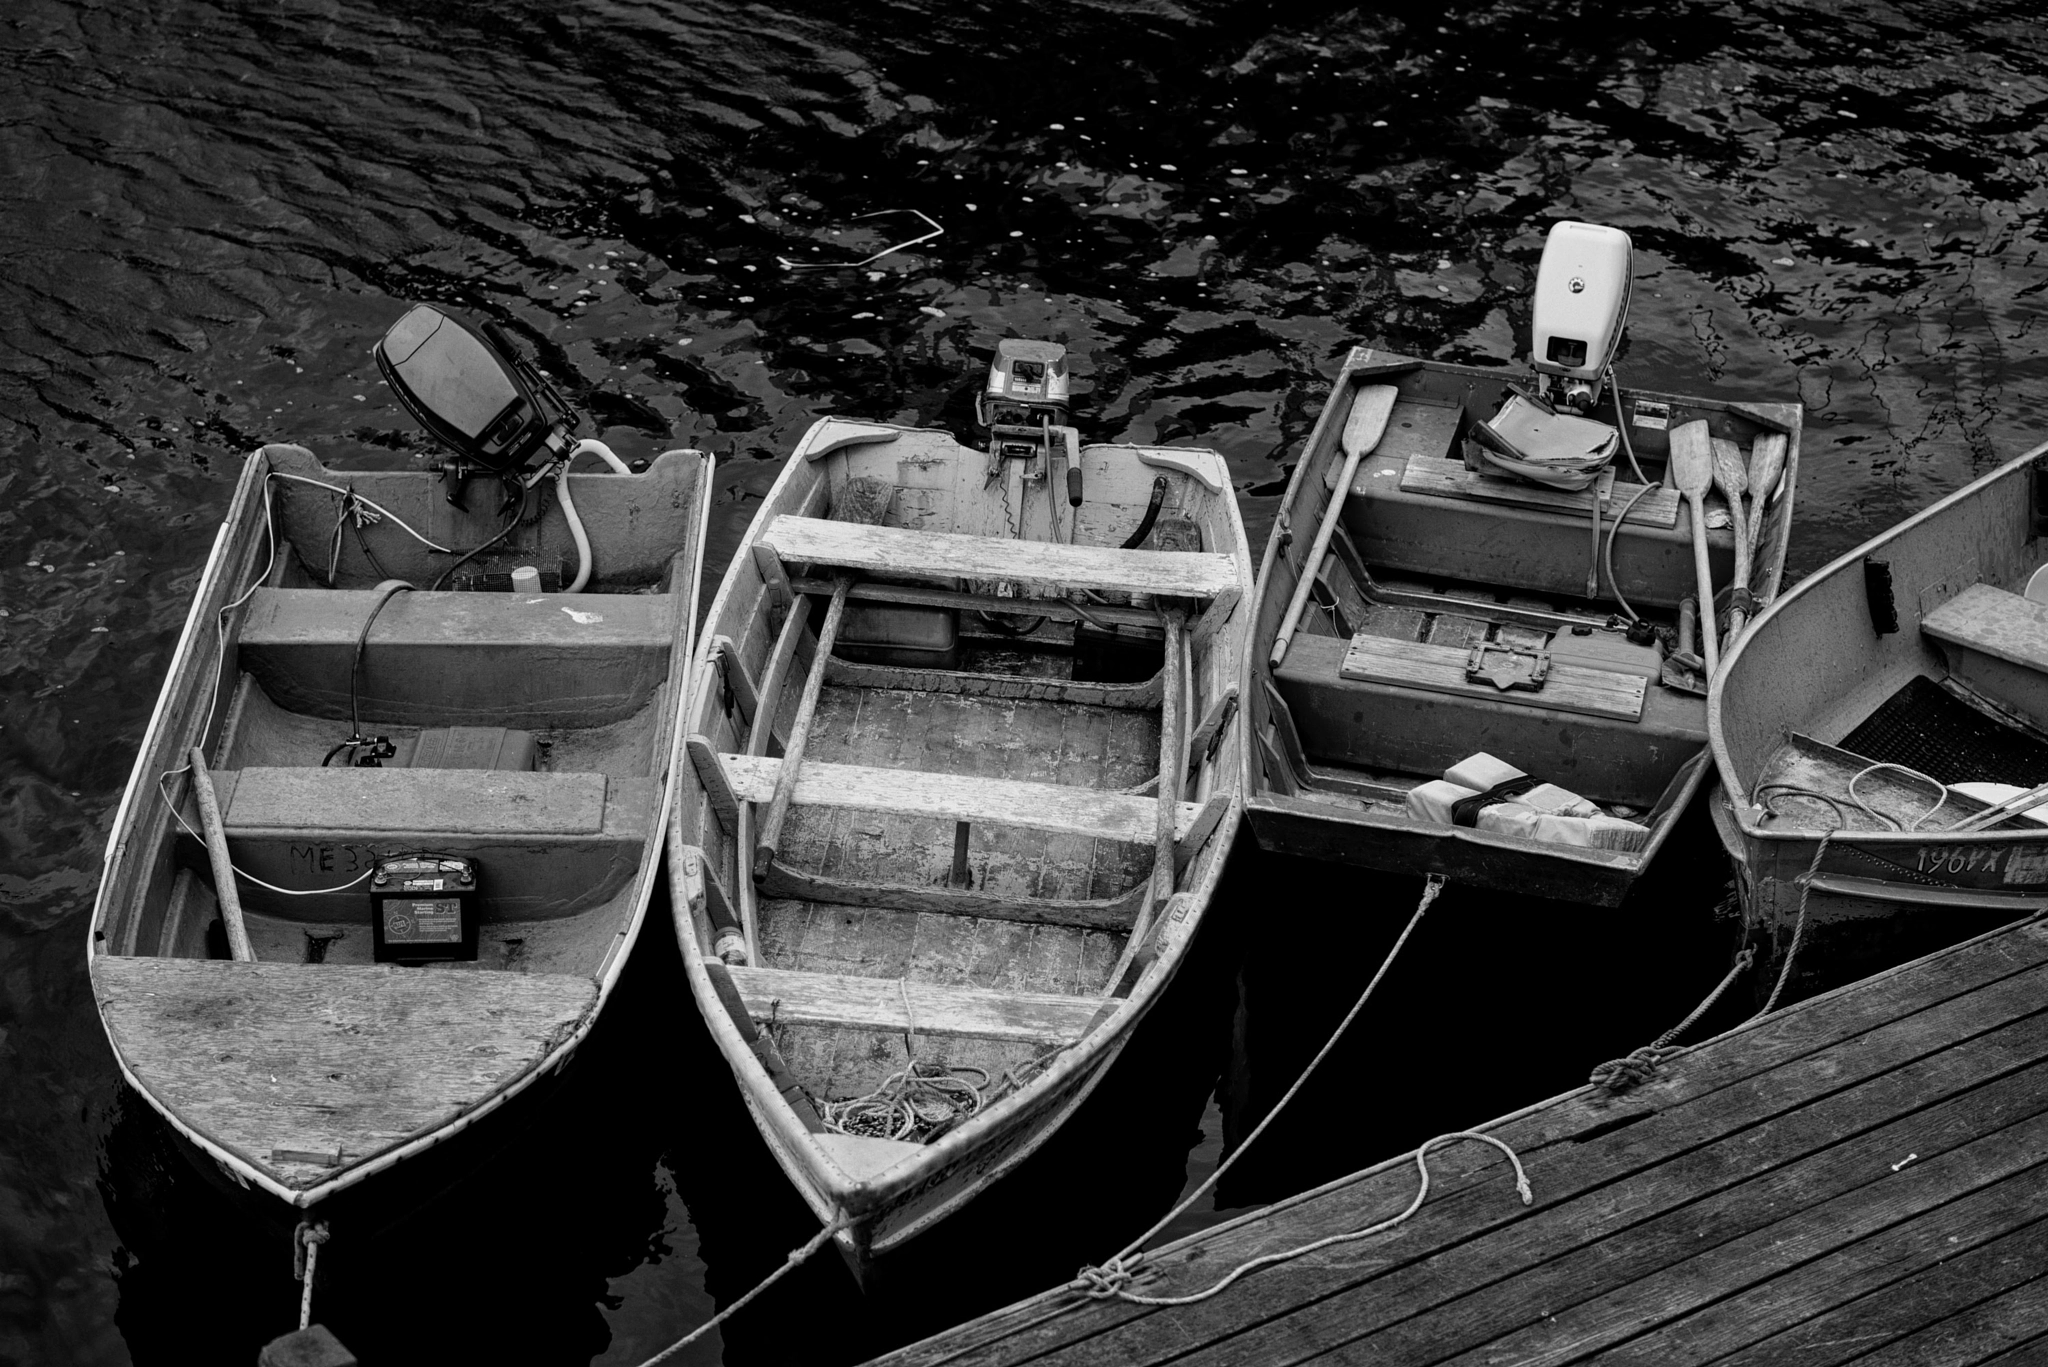 Nikon D610 sample photo. Working boats at beal's photography